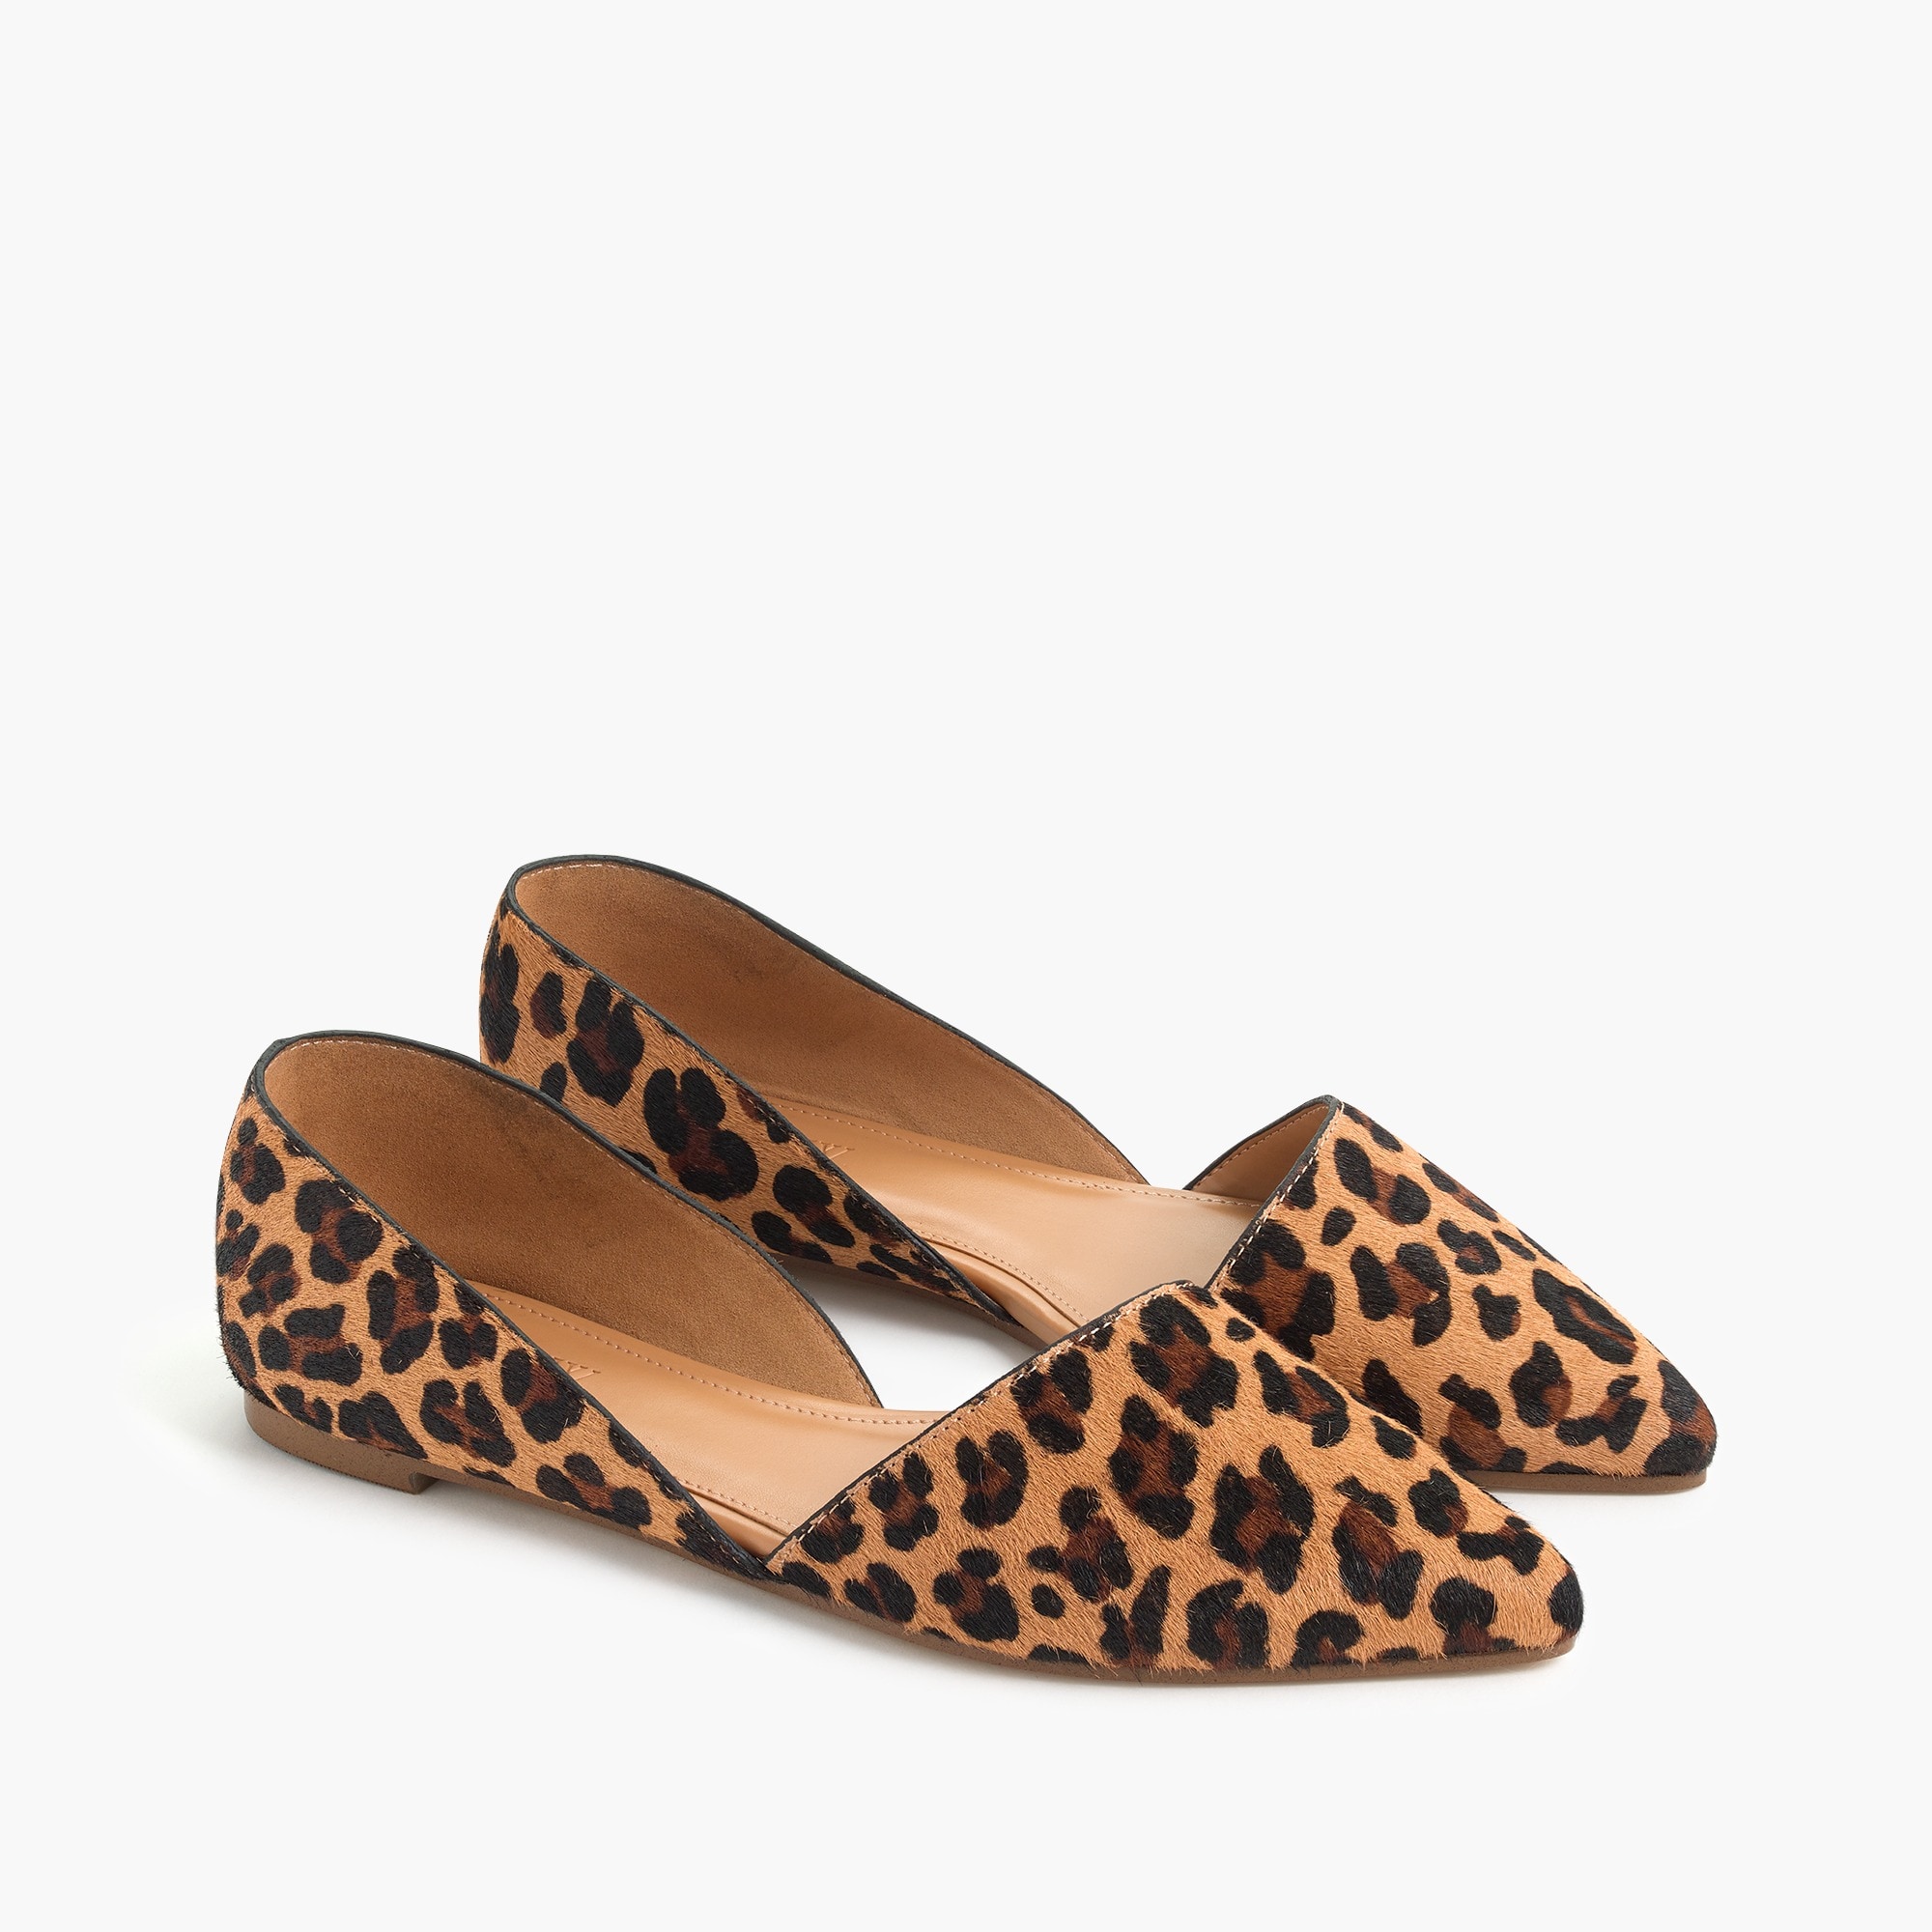 primark leopard print shoes